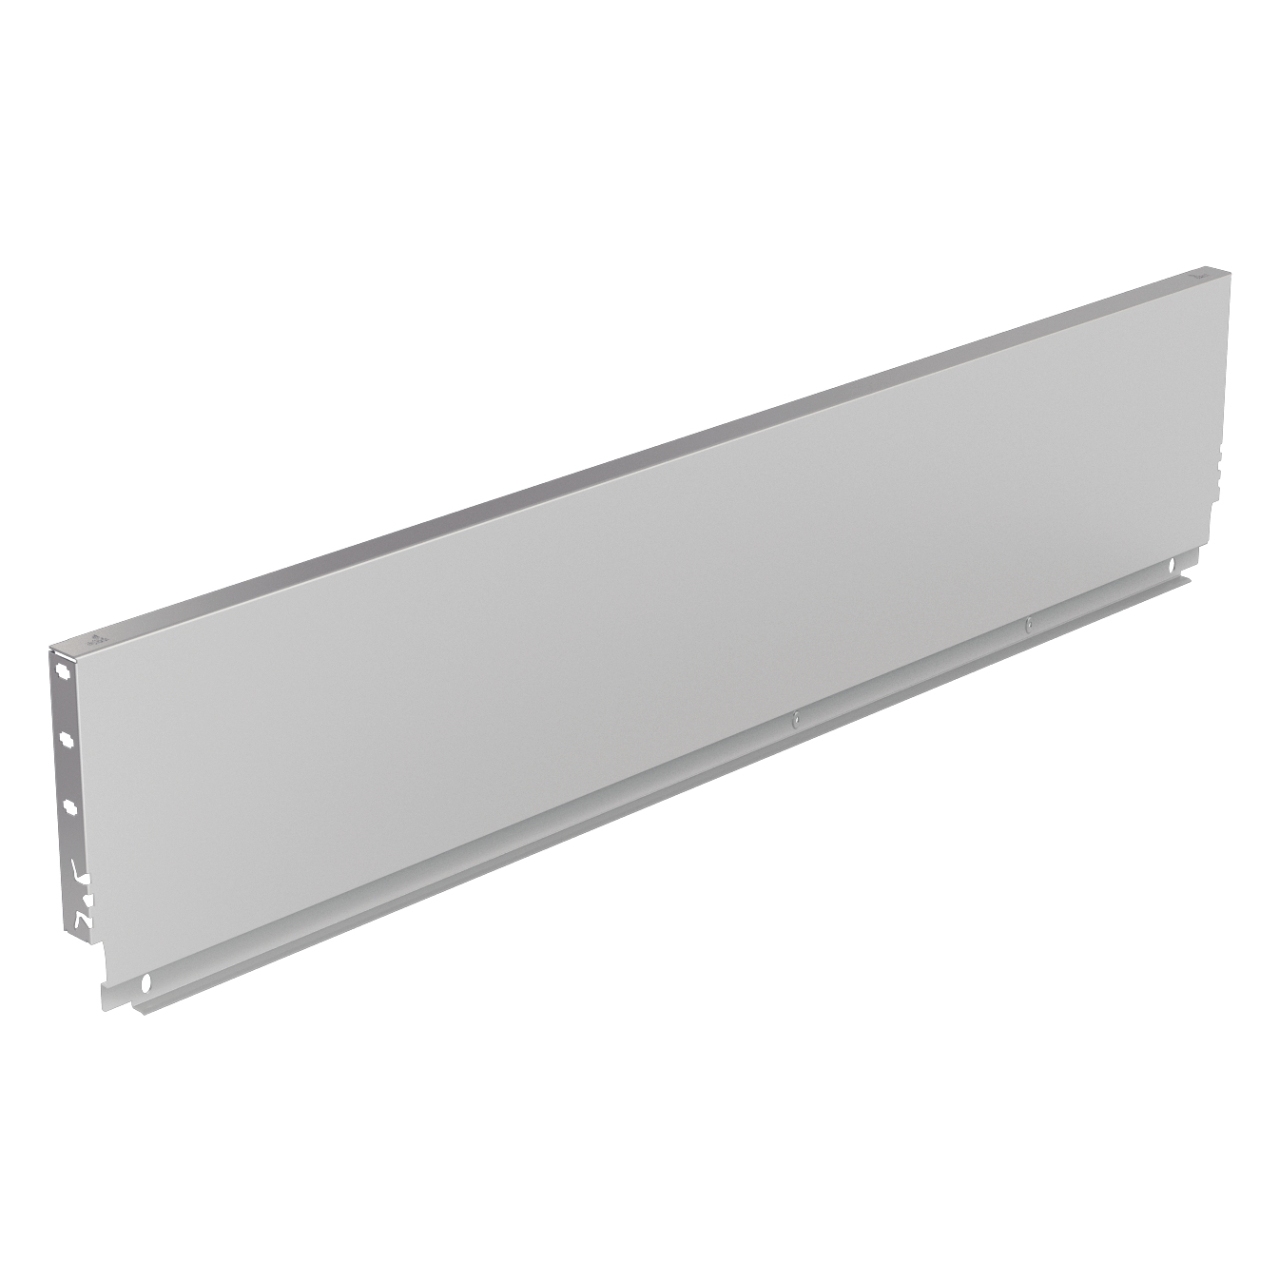 HETTICH Stahlrückwand ArciTech, 94 x 400 mm, weiß, 9121380